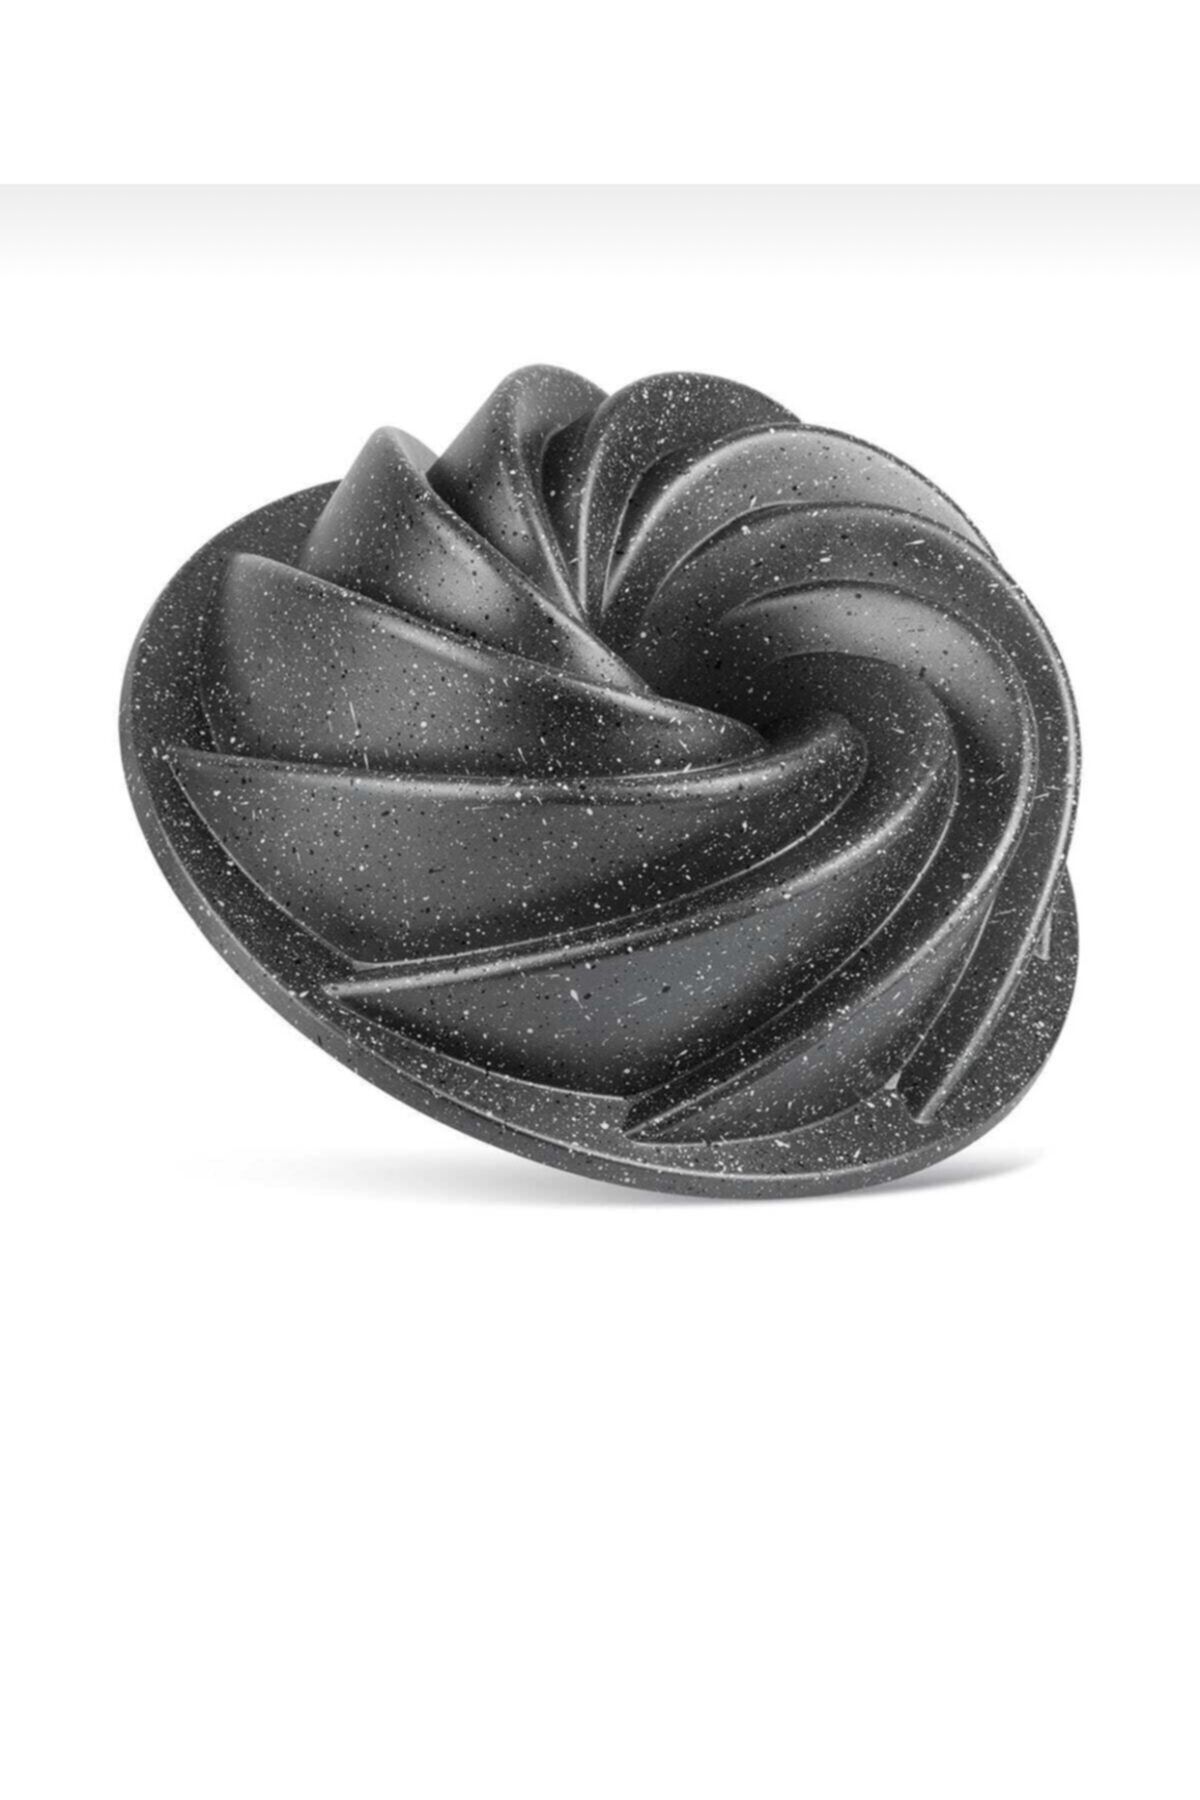 ThermoAD Granit Kek Kalıbı Rüzgar Gülü Gri